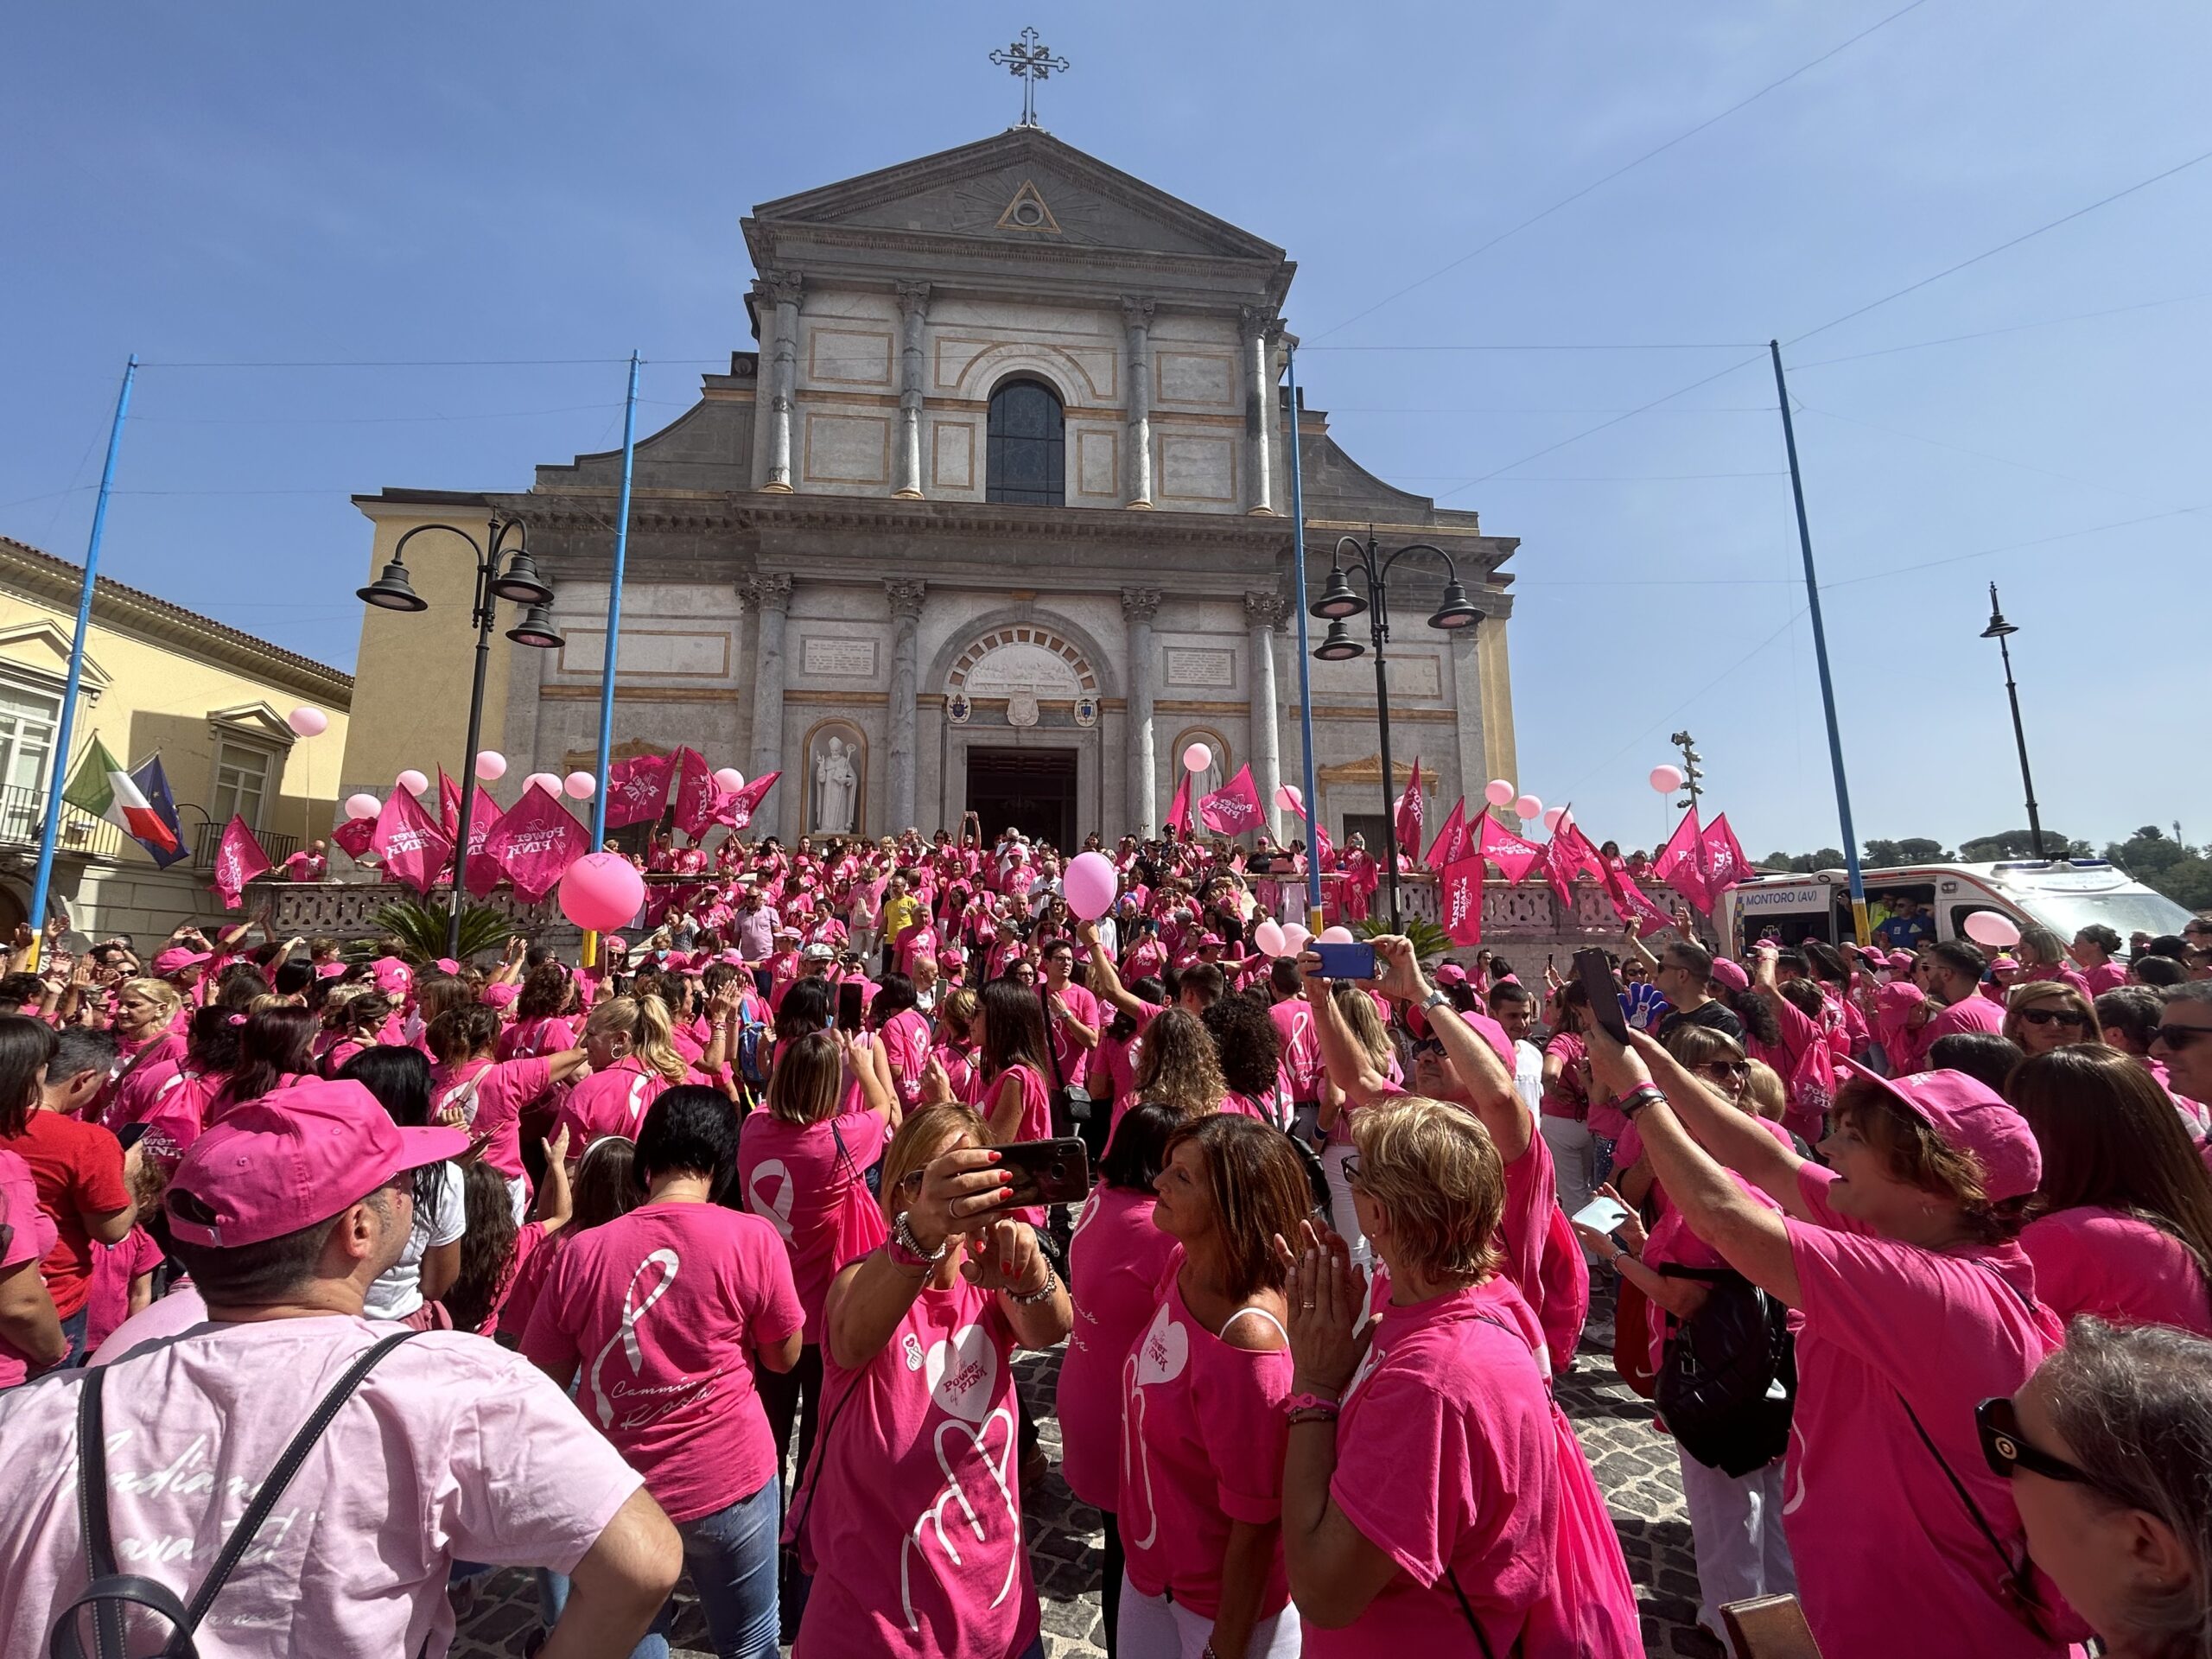 IX Camminata Rosa, l’organizzazione The Power of Pink ringrazia: viva la prevenzione, viva la vita